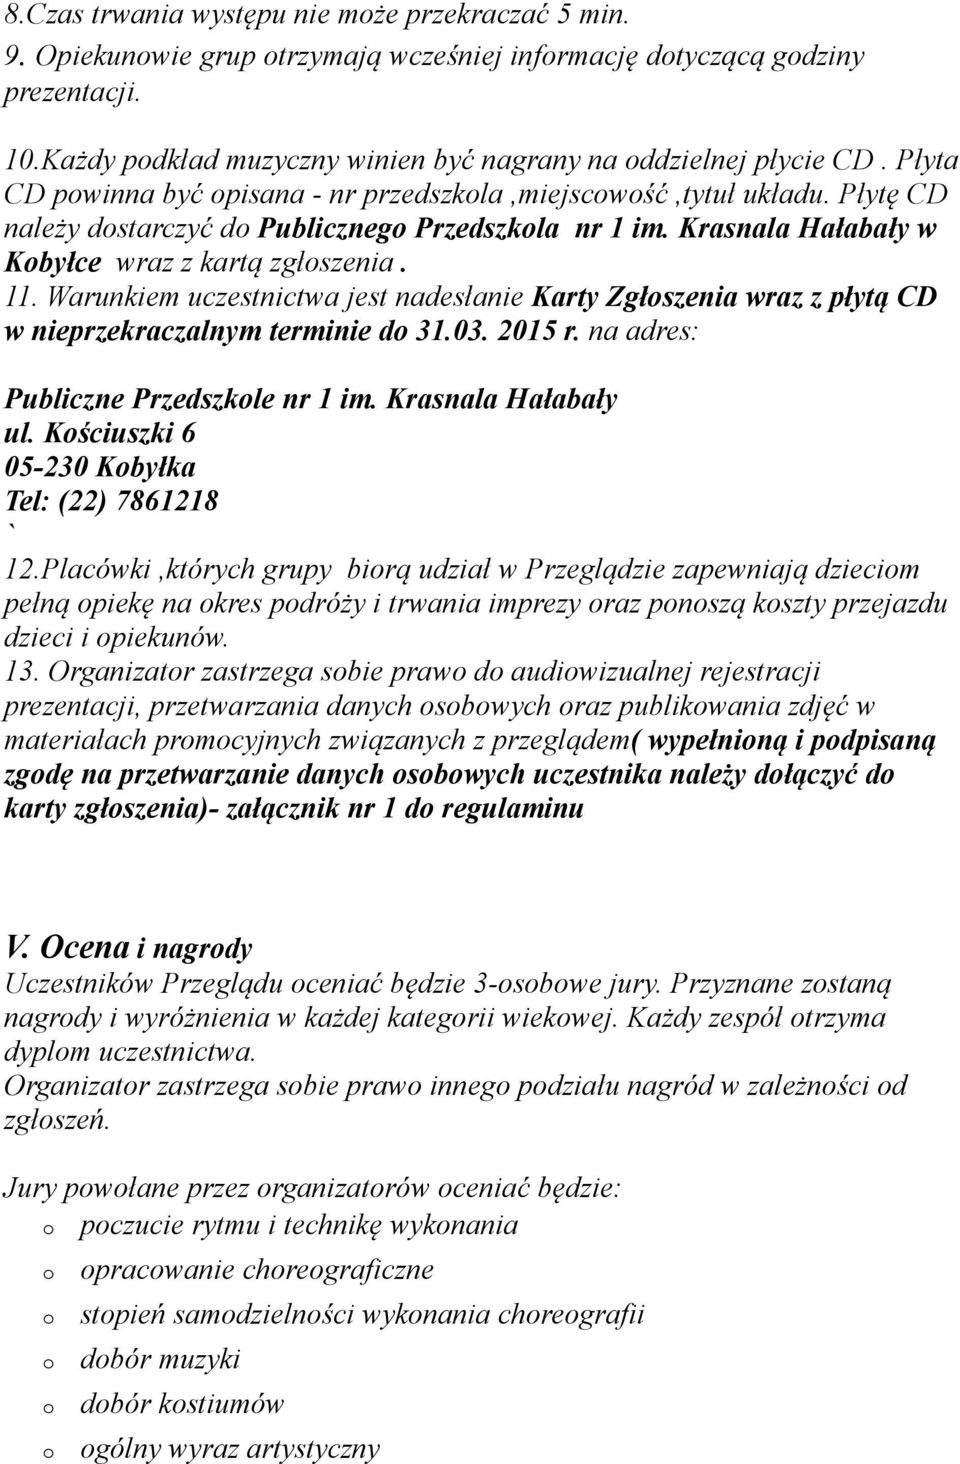 Warunkiem uczestnictwa jest nadesłanie Karty Zgłszenia wraz z płytą CD w nieprzekraczalnym terminie d 31.03. 2015 r. na adres: Publiczne Przedszkle nr 1 im. Krasnala Hałabały ul.